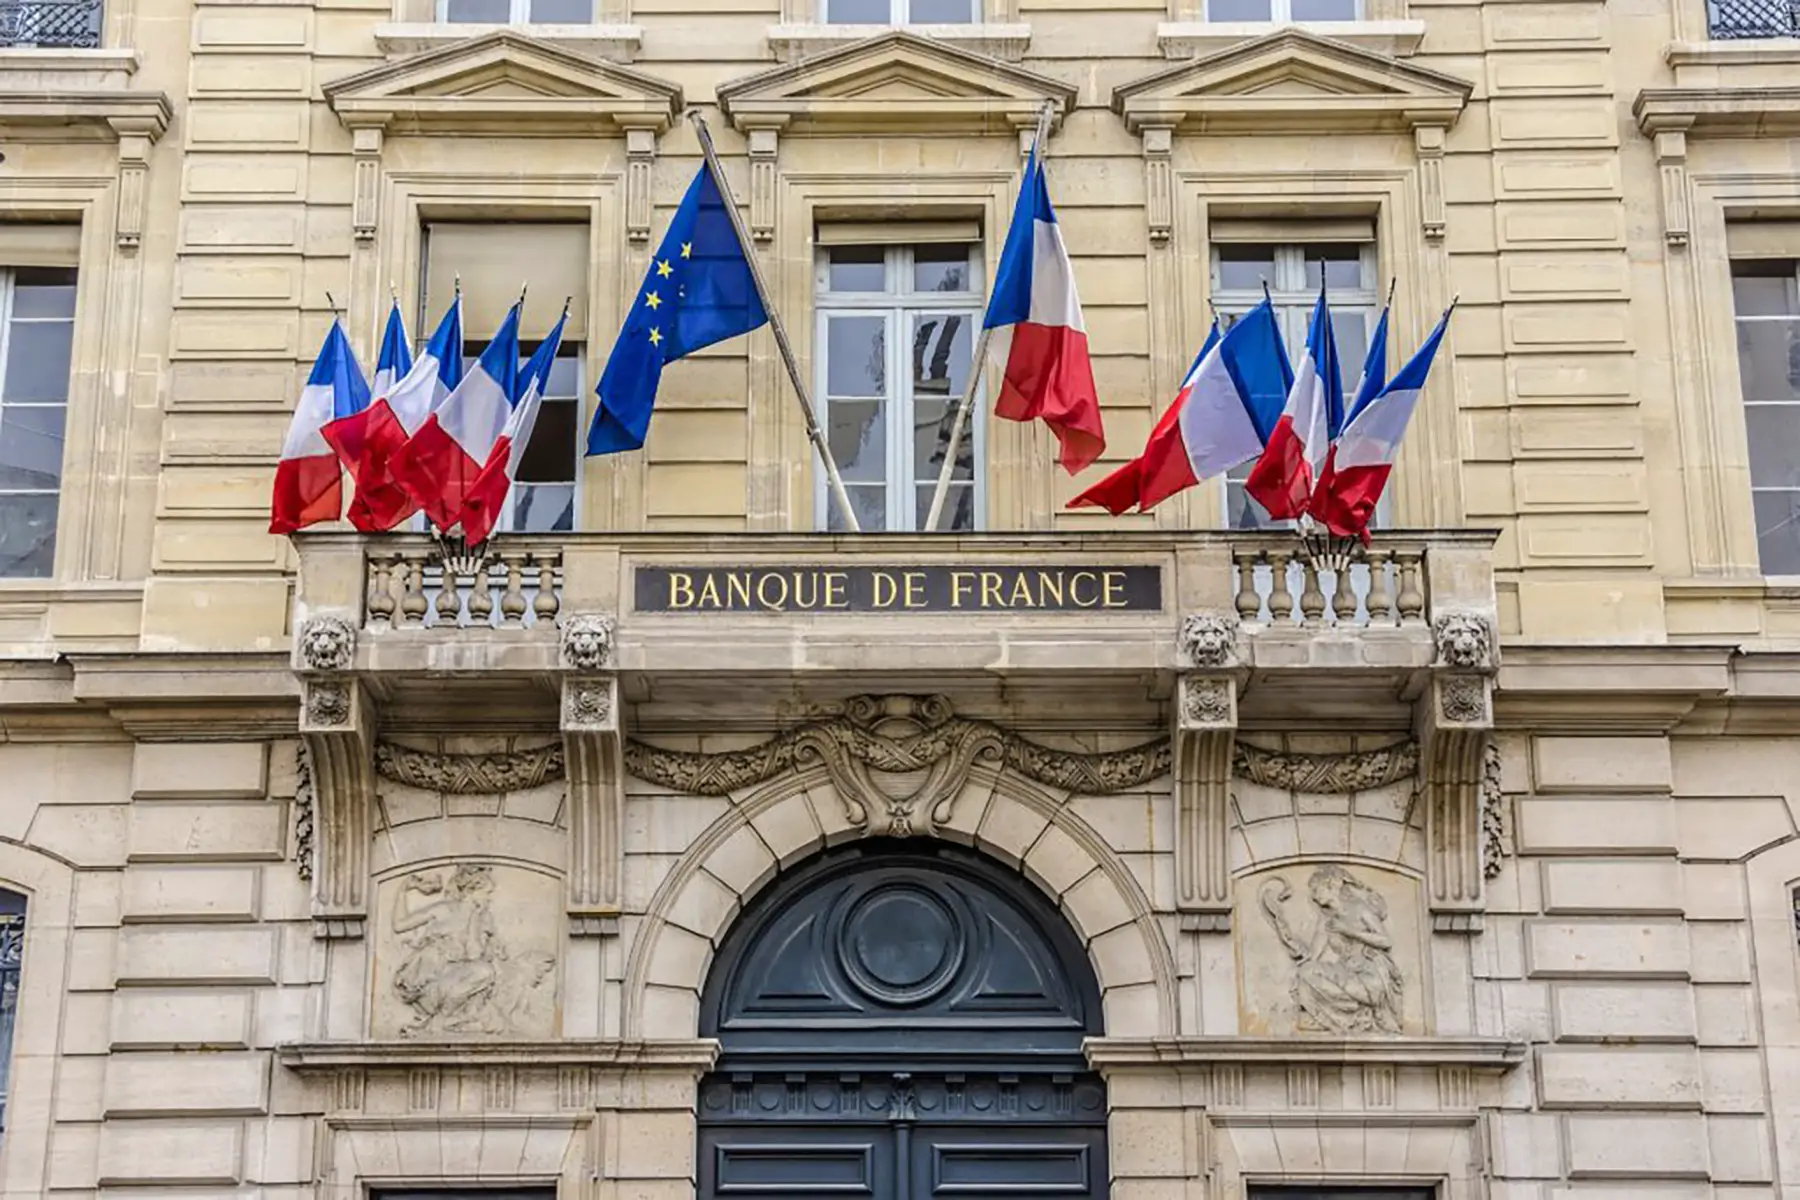 Facade of the Banque de France, the central bank, in Paris